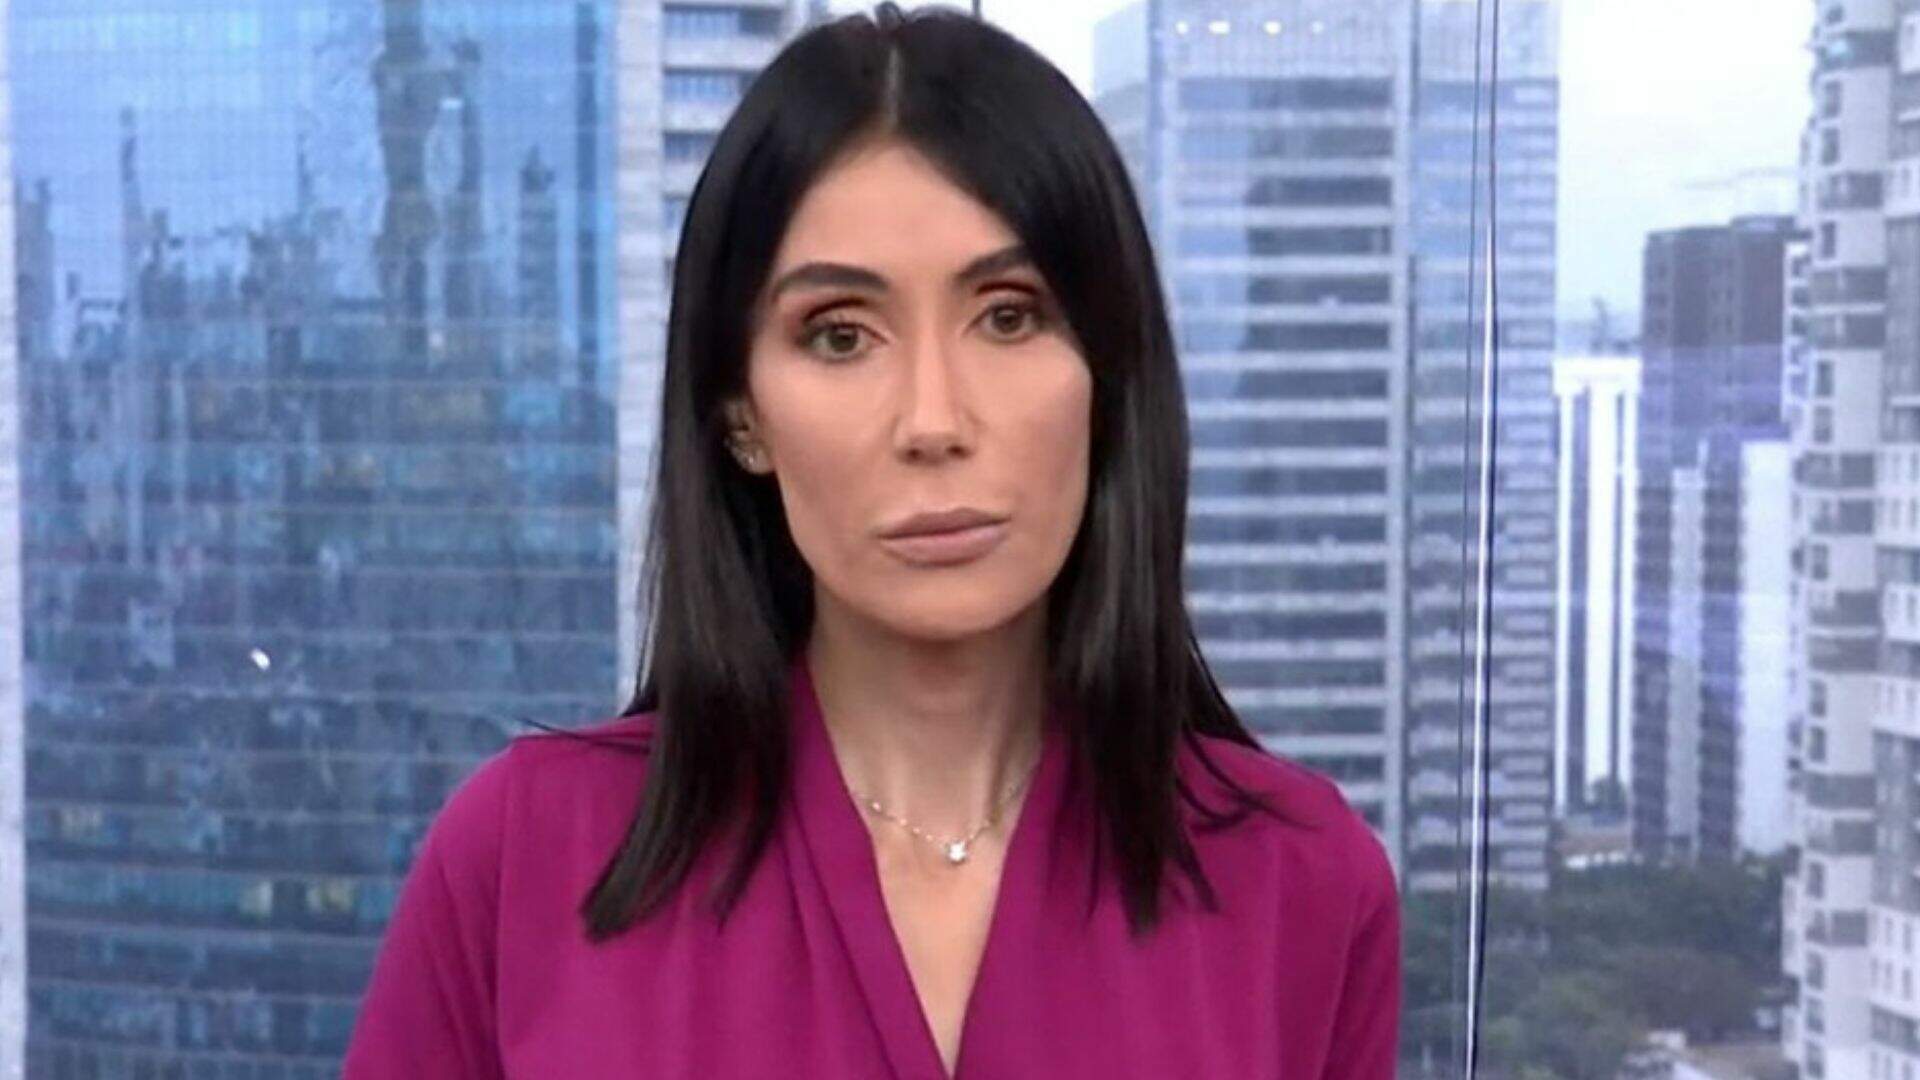 Michelle Barros revela principal motivo para saída da TV Globo: “Não veio” - Metropolitana FM